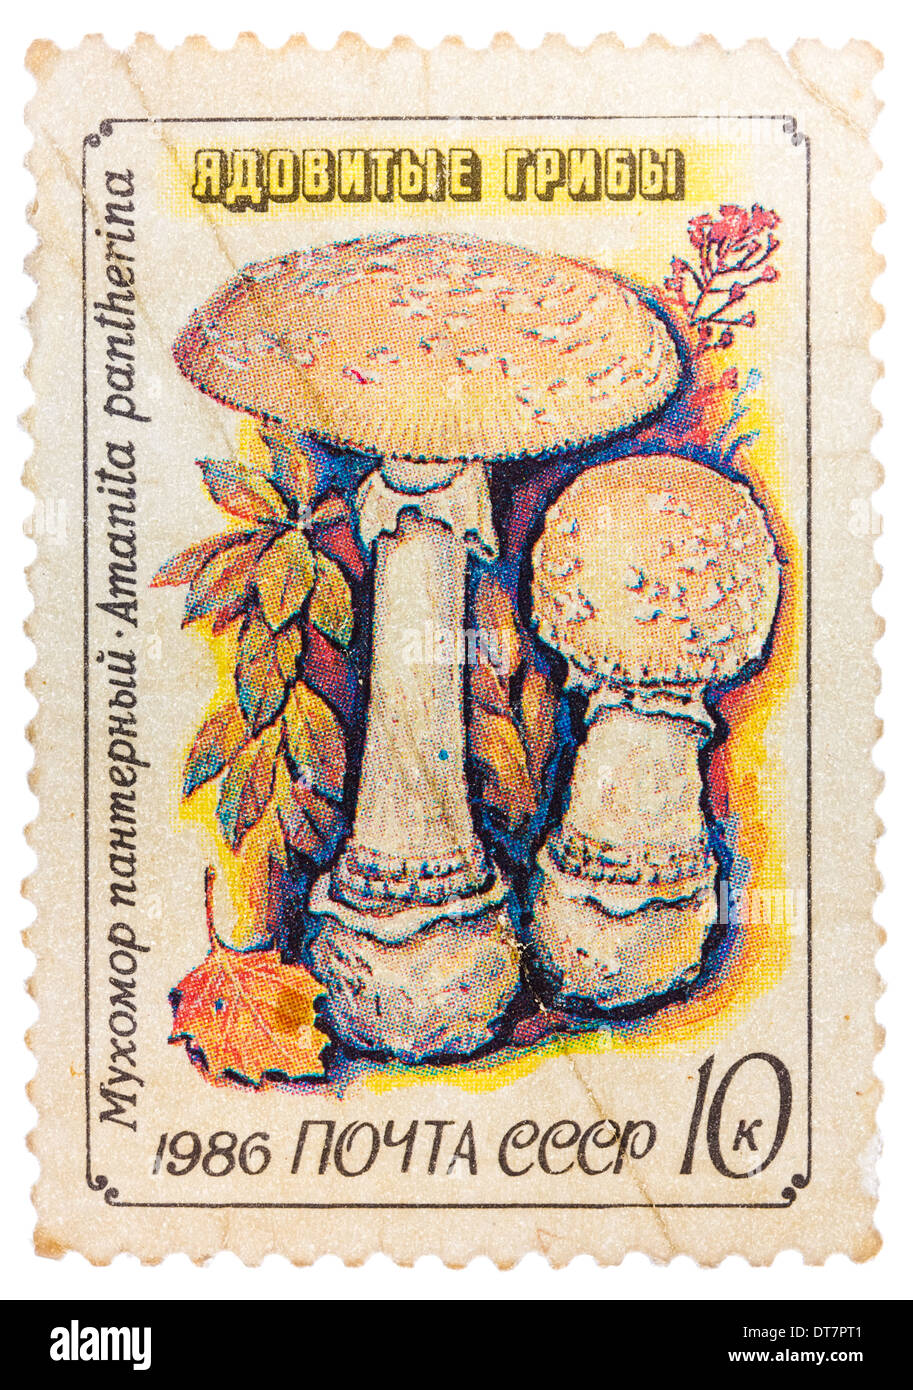 Timbres en URSS (CCCP, Union soviétique) montre la panthère toxique ou de champignons (Amanita pantherina fausse blush) Banque D'Images